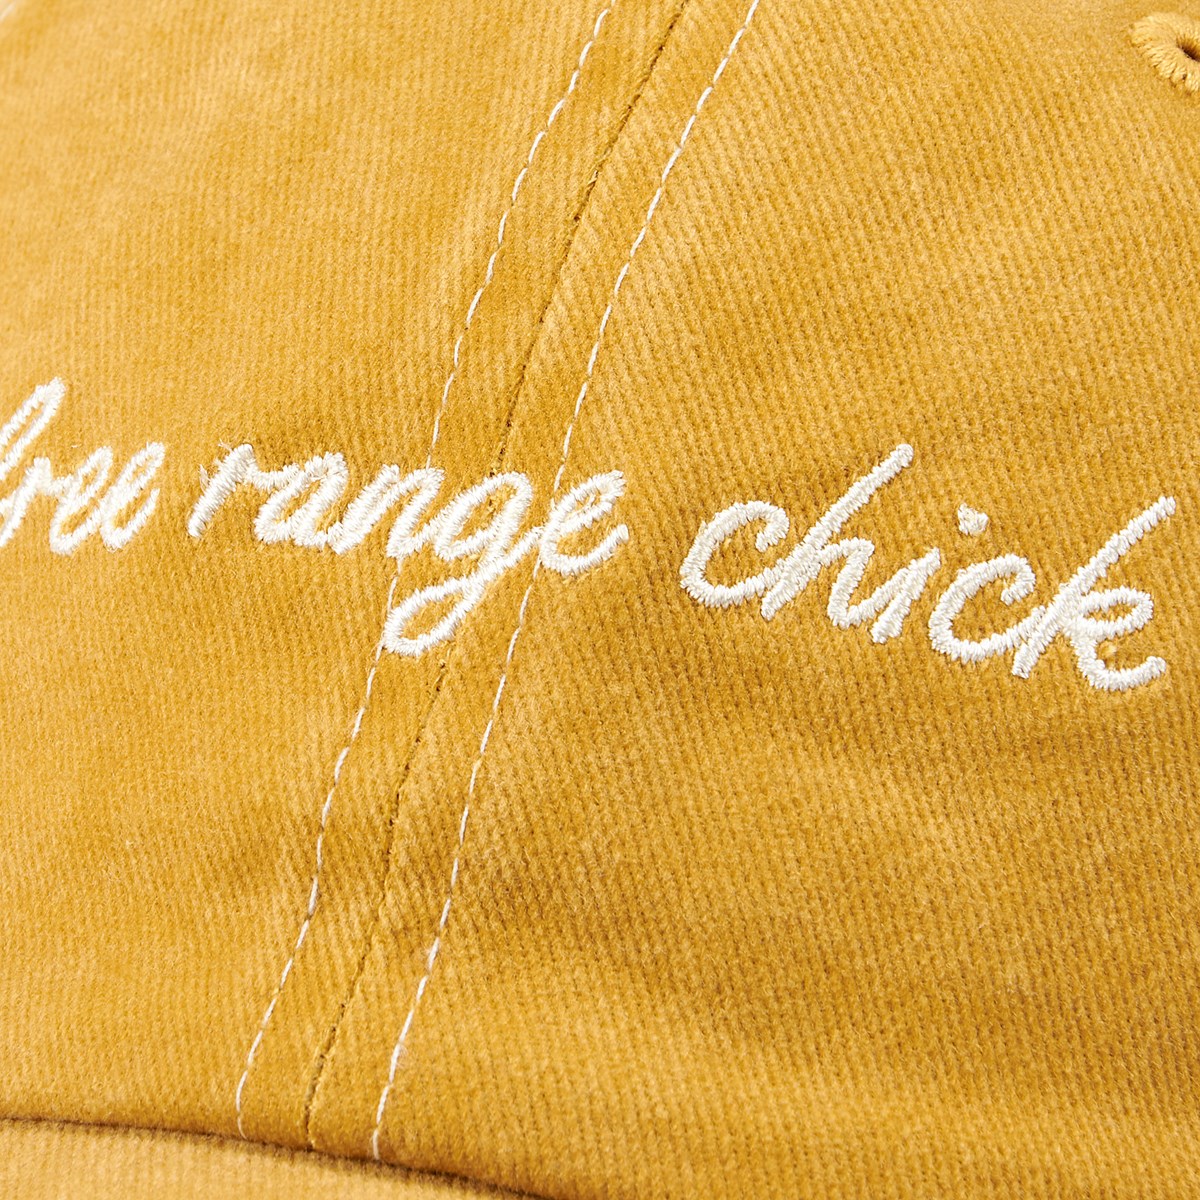 Free Range Chick Baseball Cap - Cotton, Metal